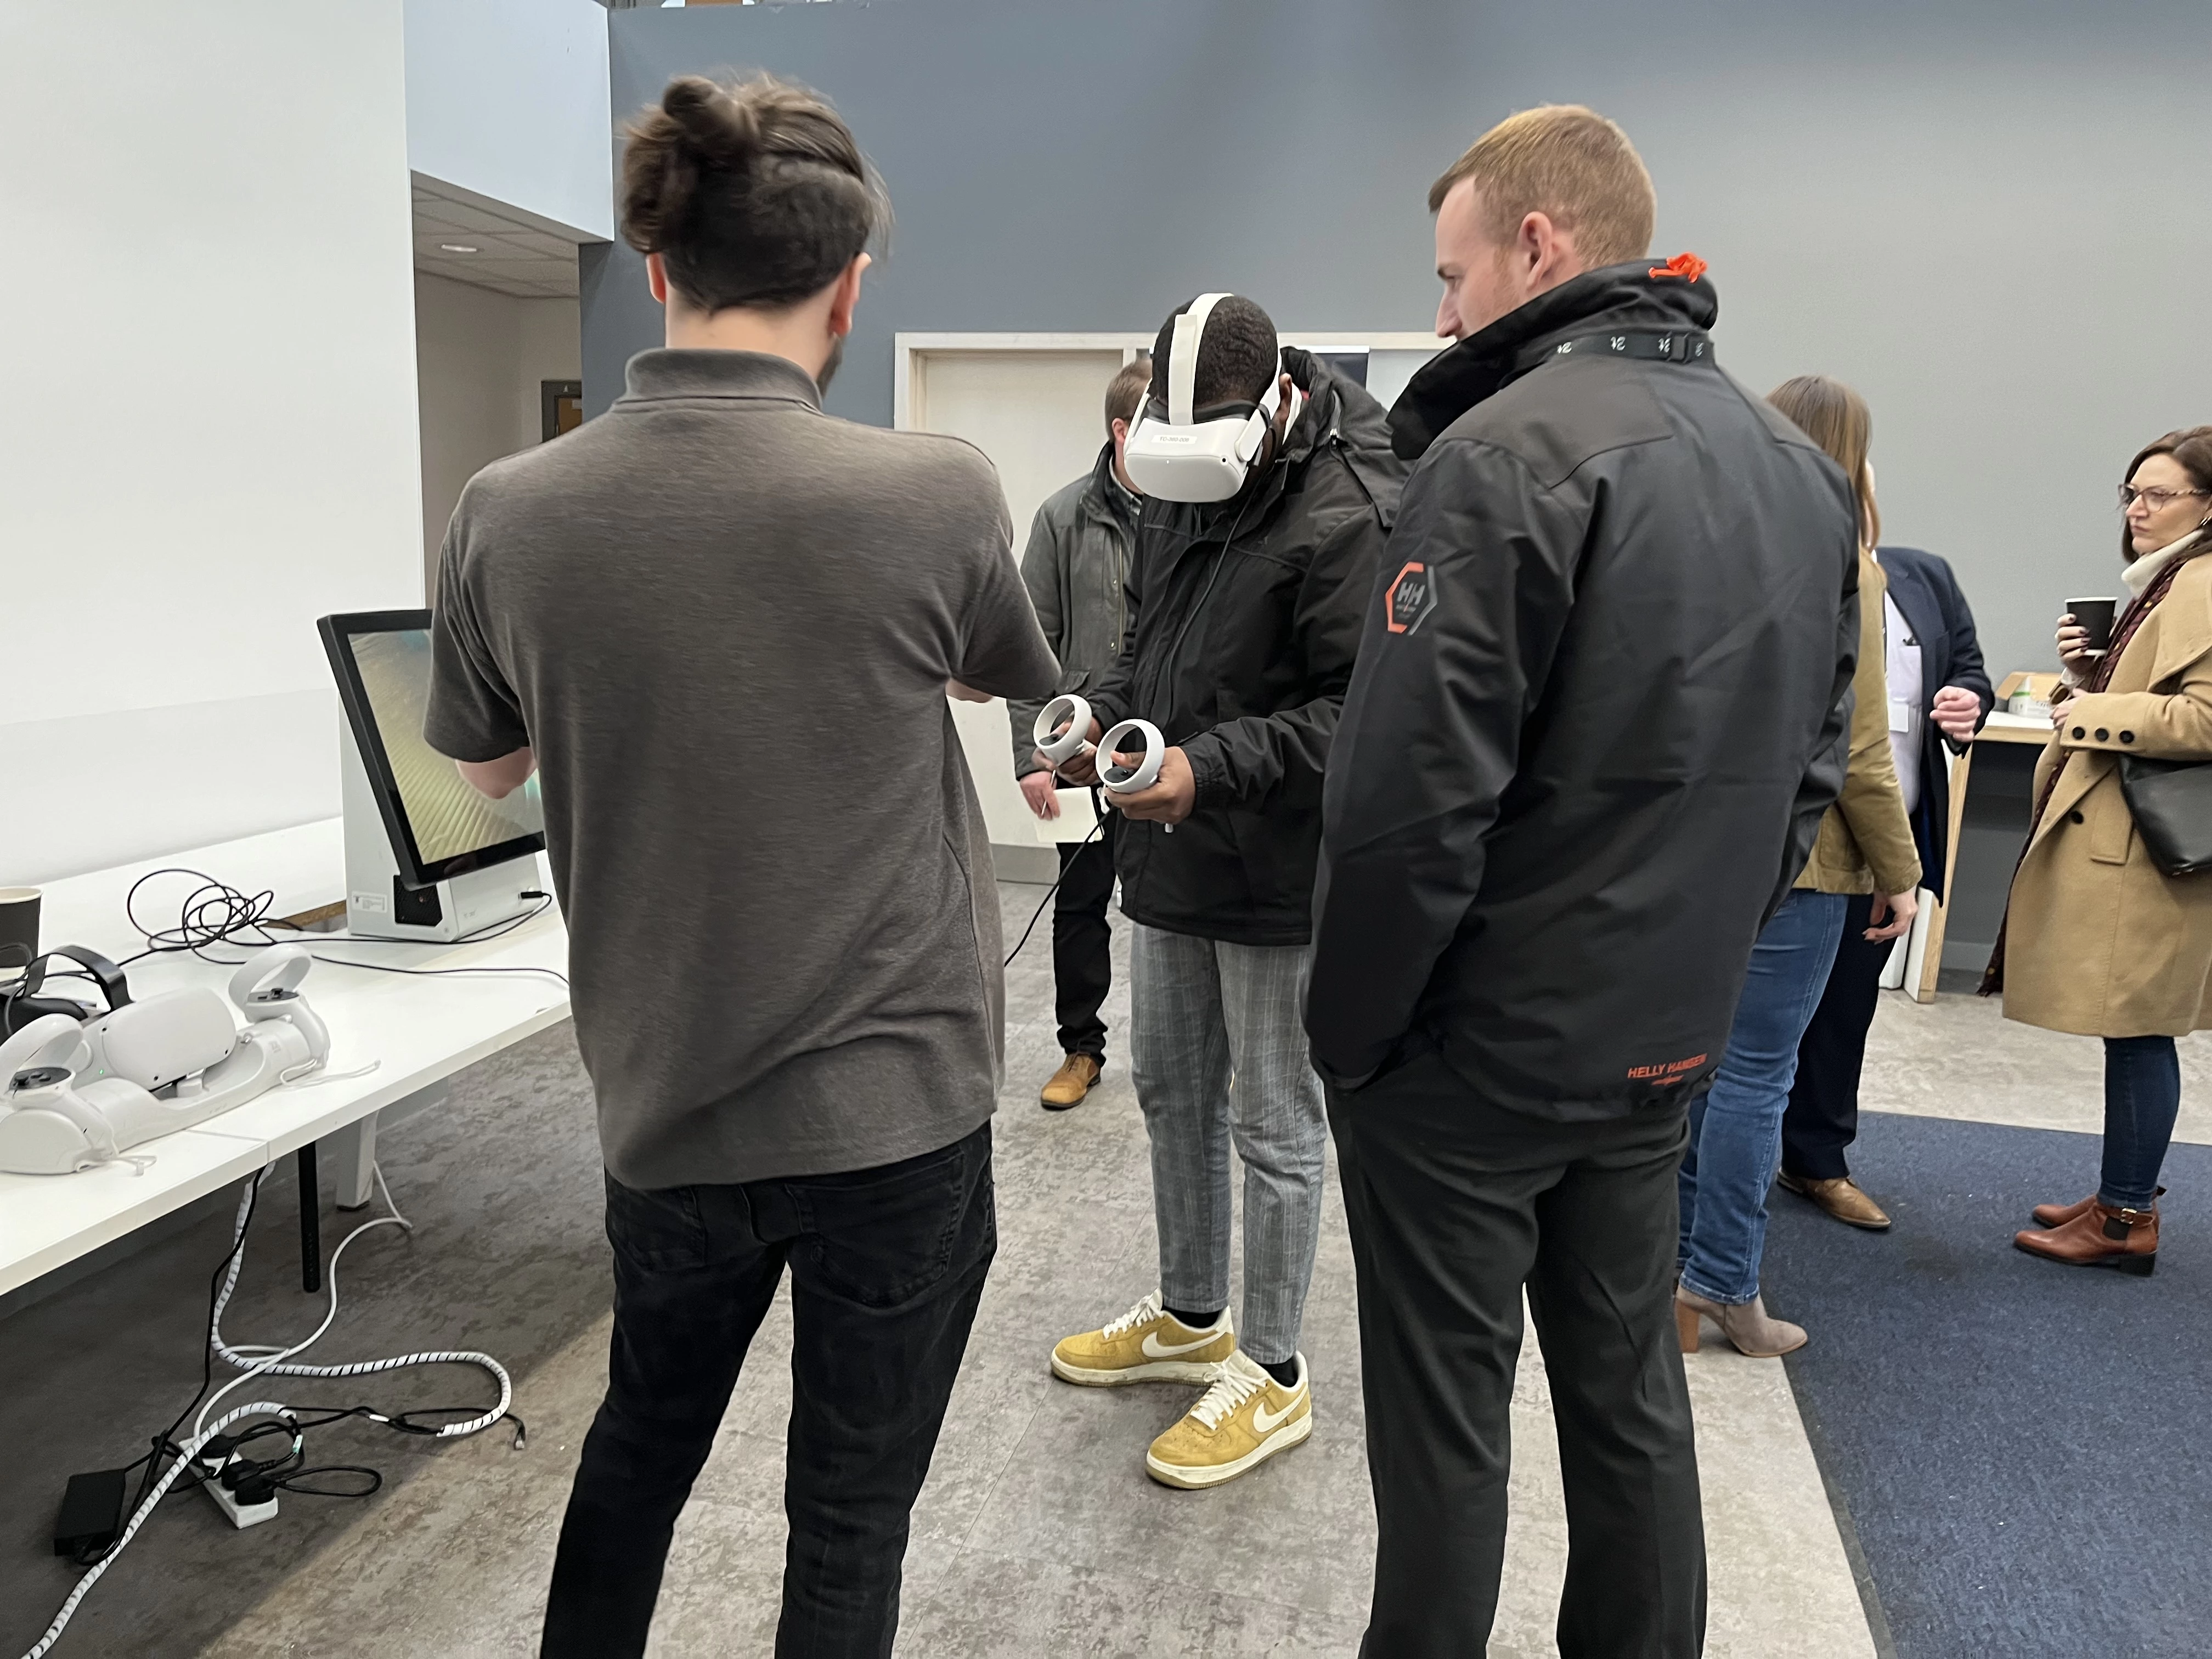 IGEM members try 3t's VR technology